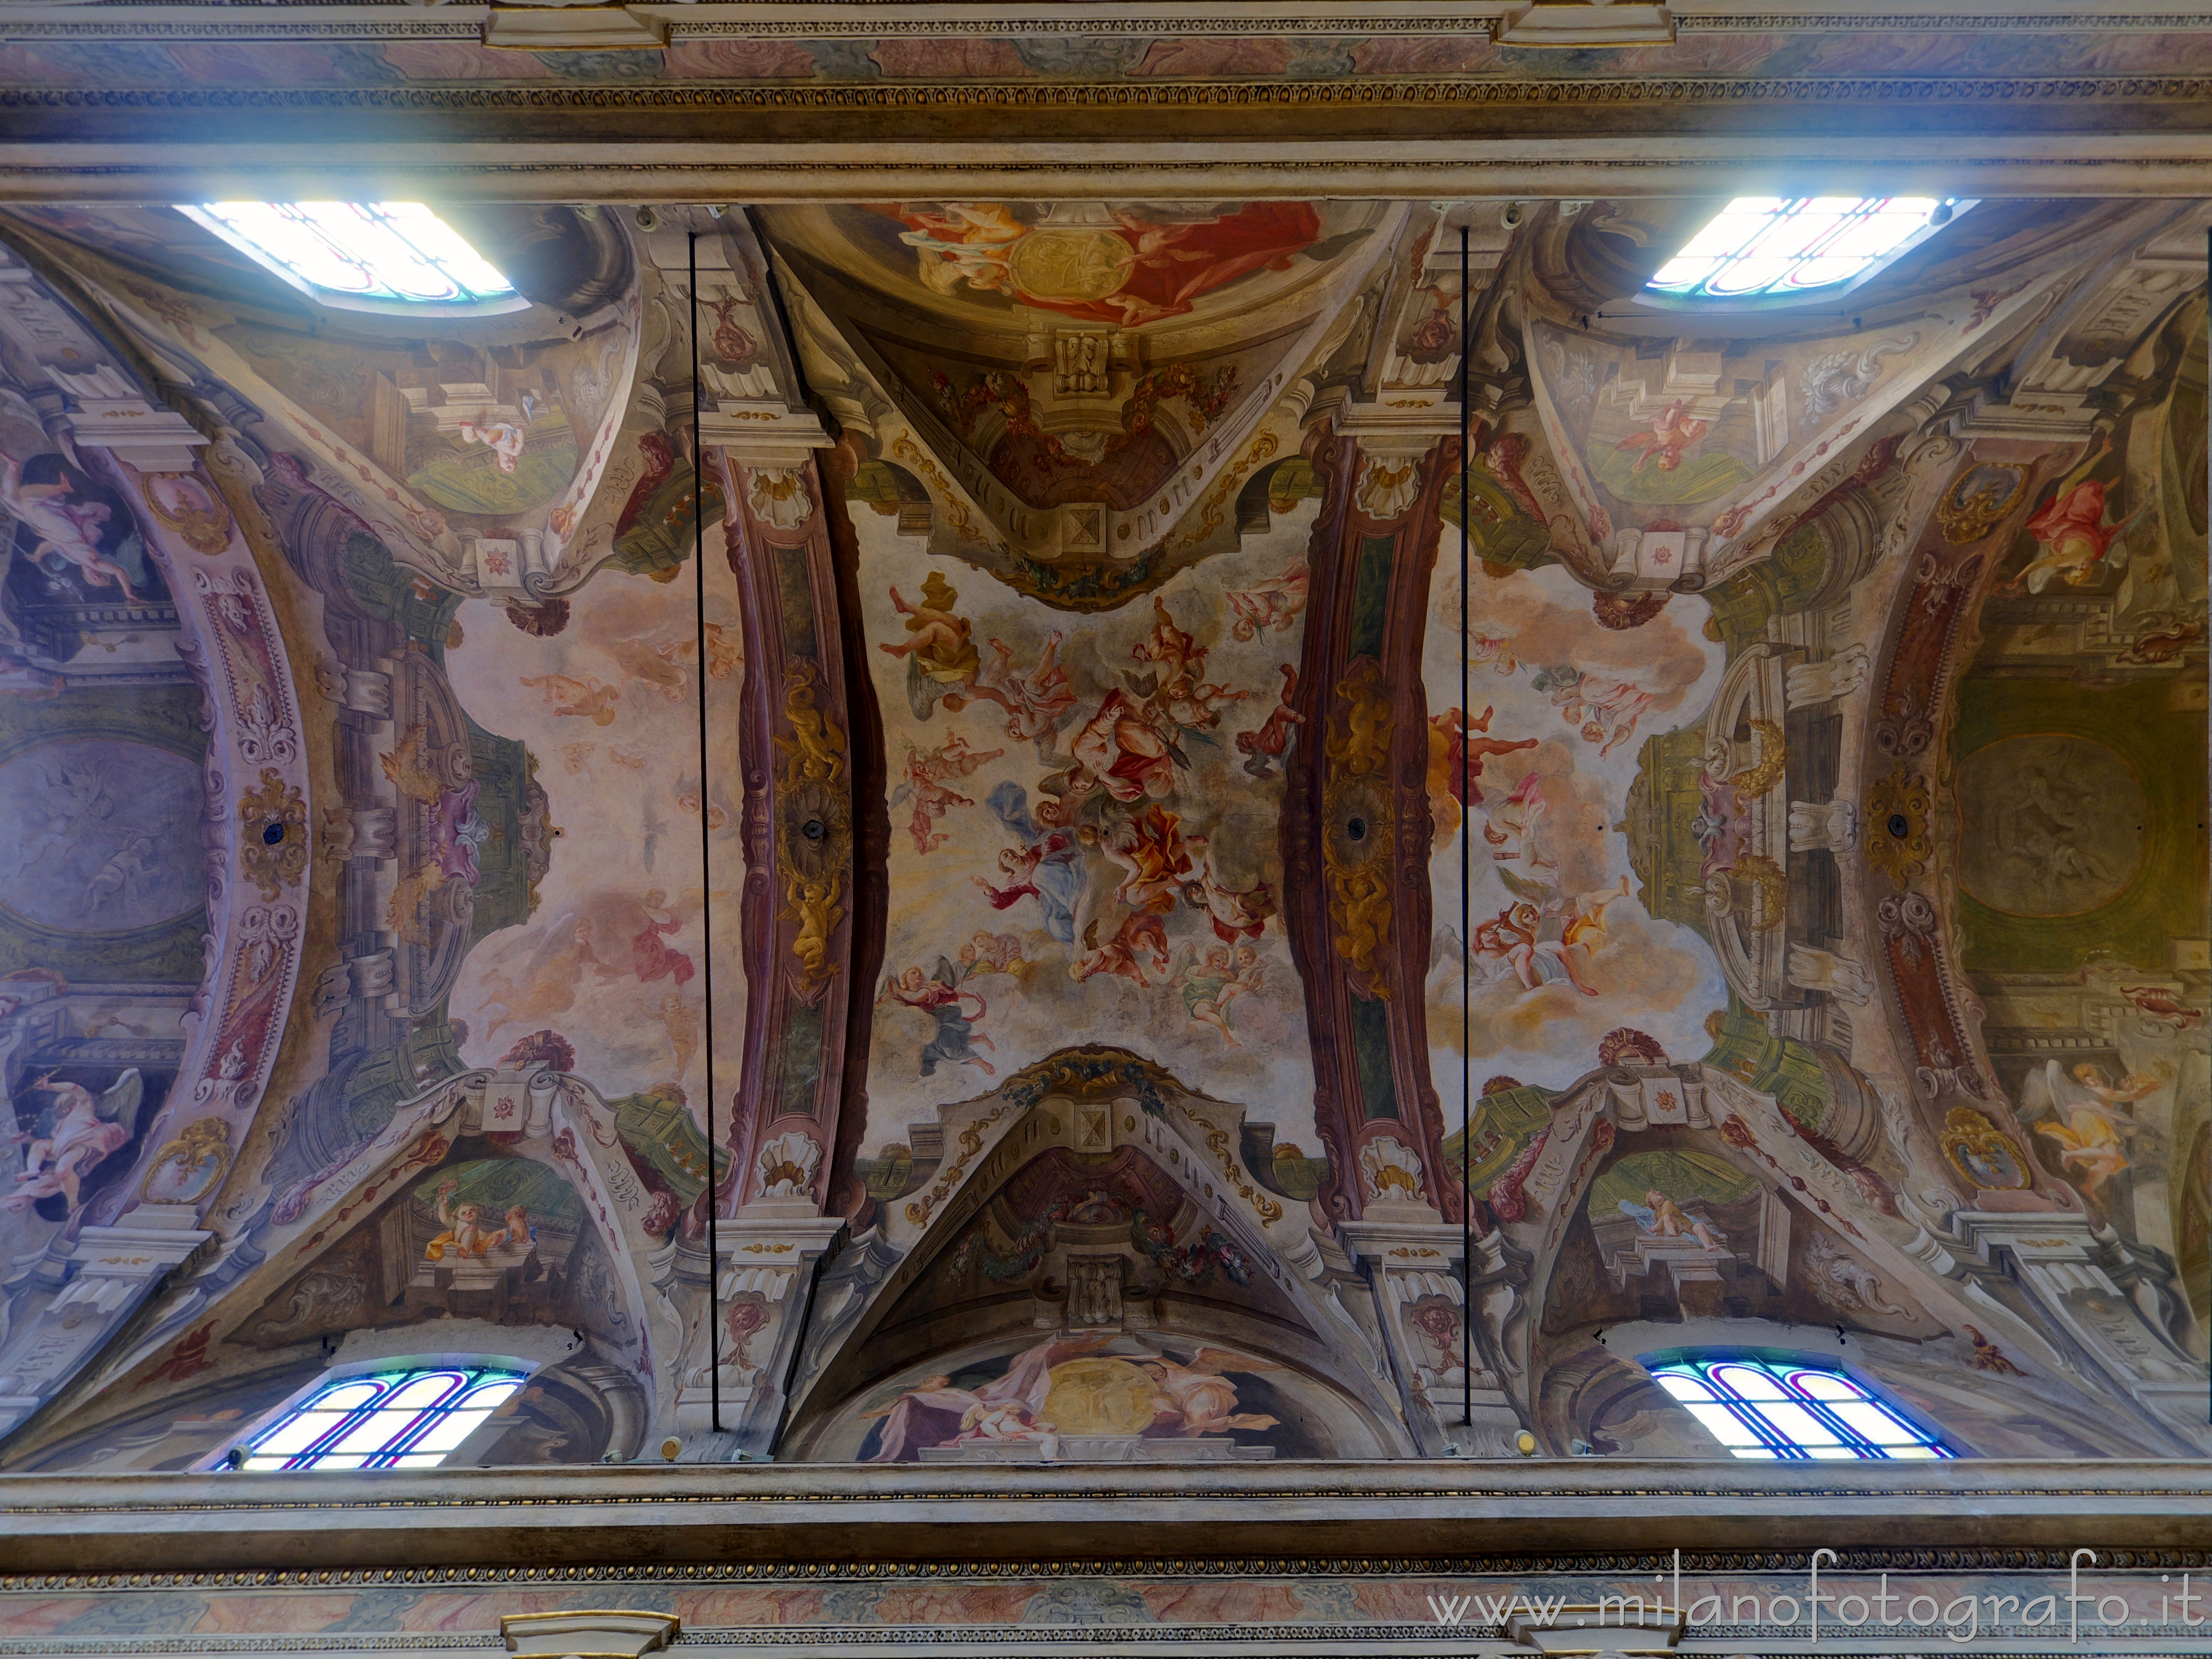 Monza (Monza e Brianza): Soffitto della navata centrale della Chiesa di Santa Maria di Carrobiolo - Monza (Monza e Brianza)